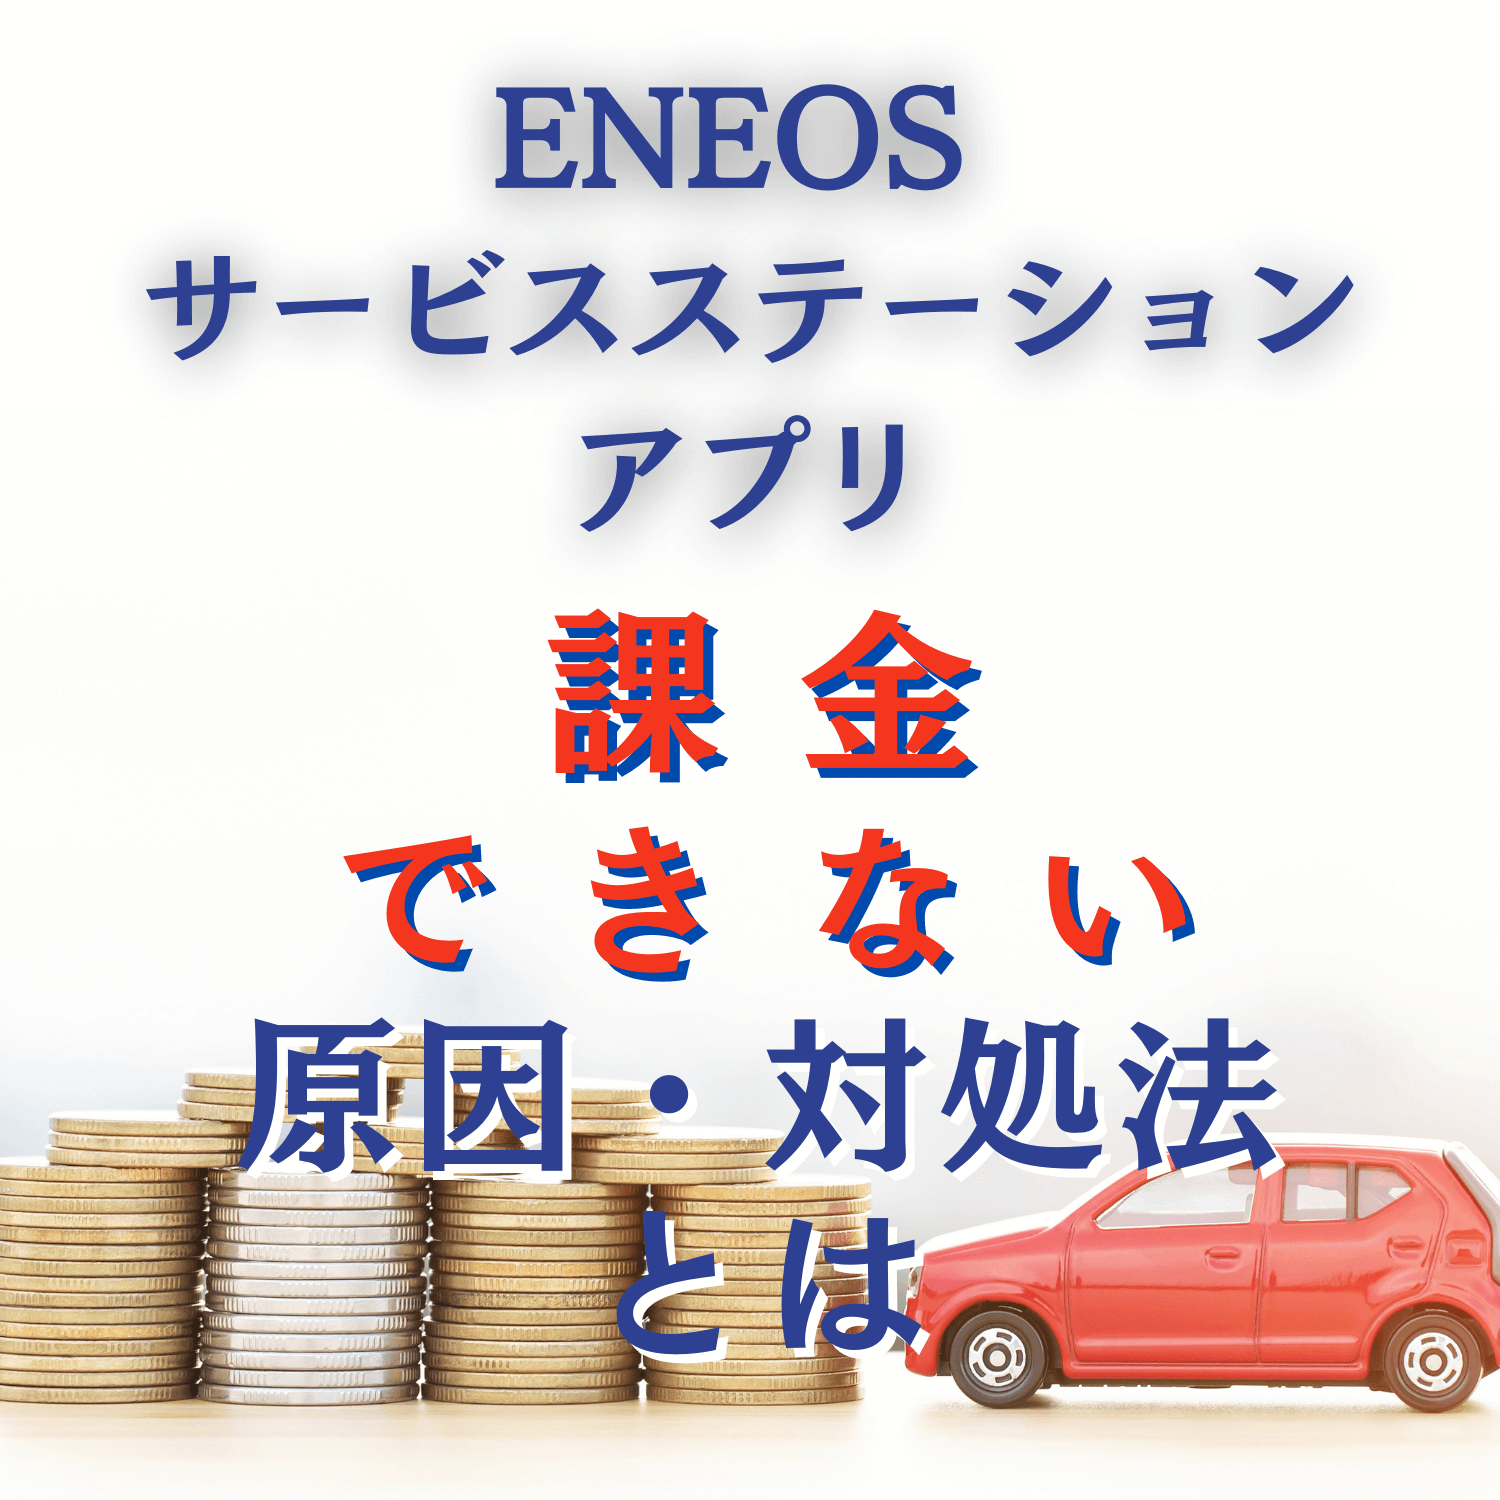 ENEOS サービスステーションアプリ(ENEOS)に課金できない原因と対処法とは #ENEOS